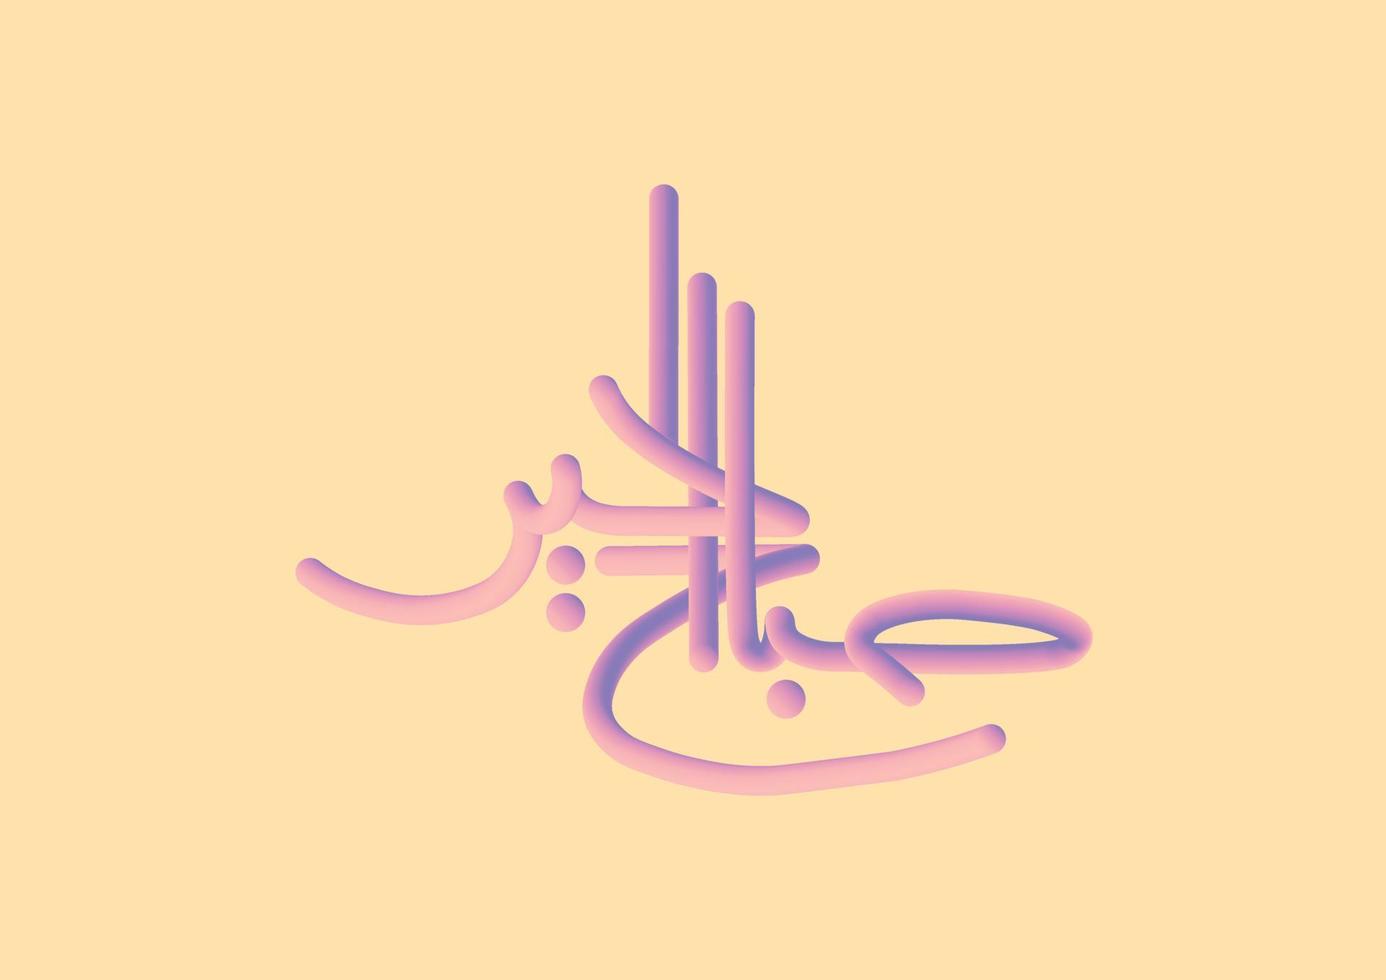 Inspirational Arabic Greatings bedeutet auf Englisch Guten Morgen. 3D-Vektor-Typografie-Plakatdesign mit orangefarbenem Hintergrund. vektor